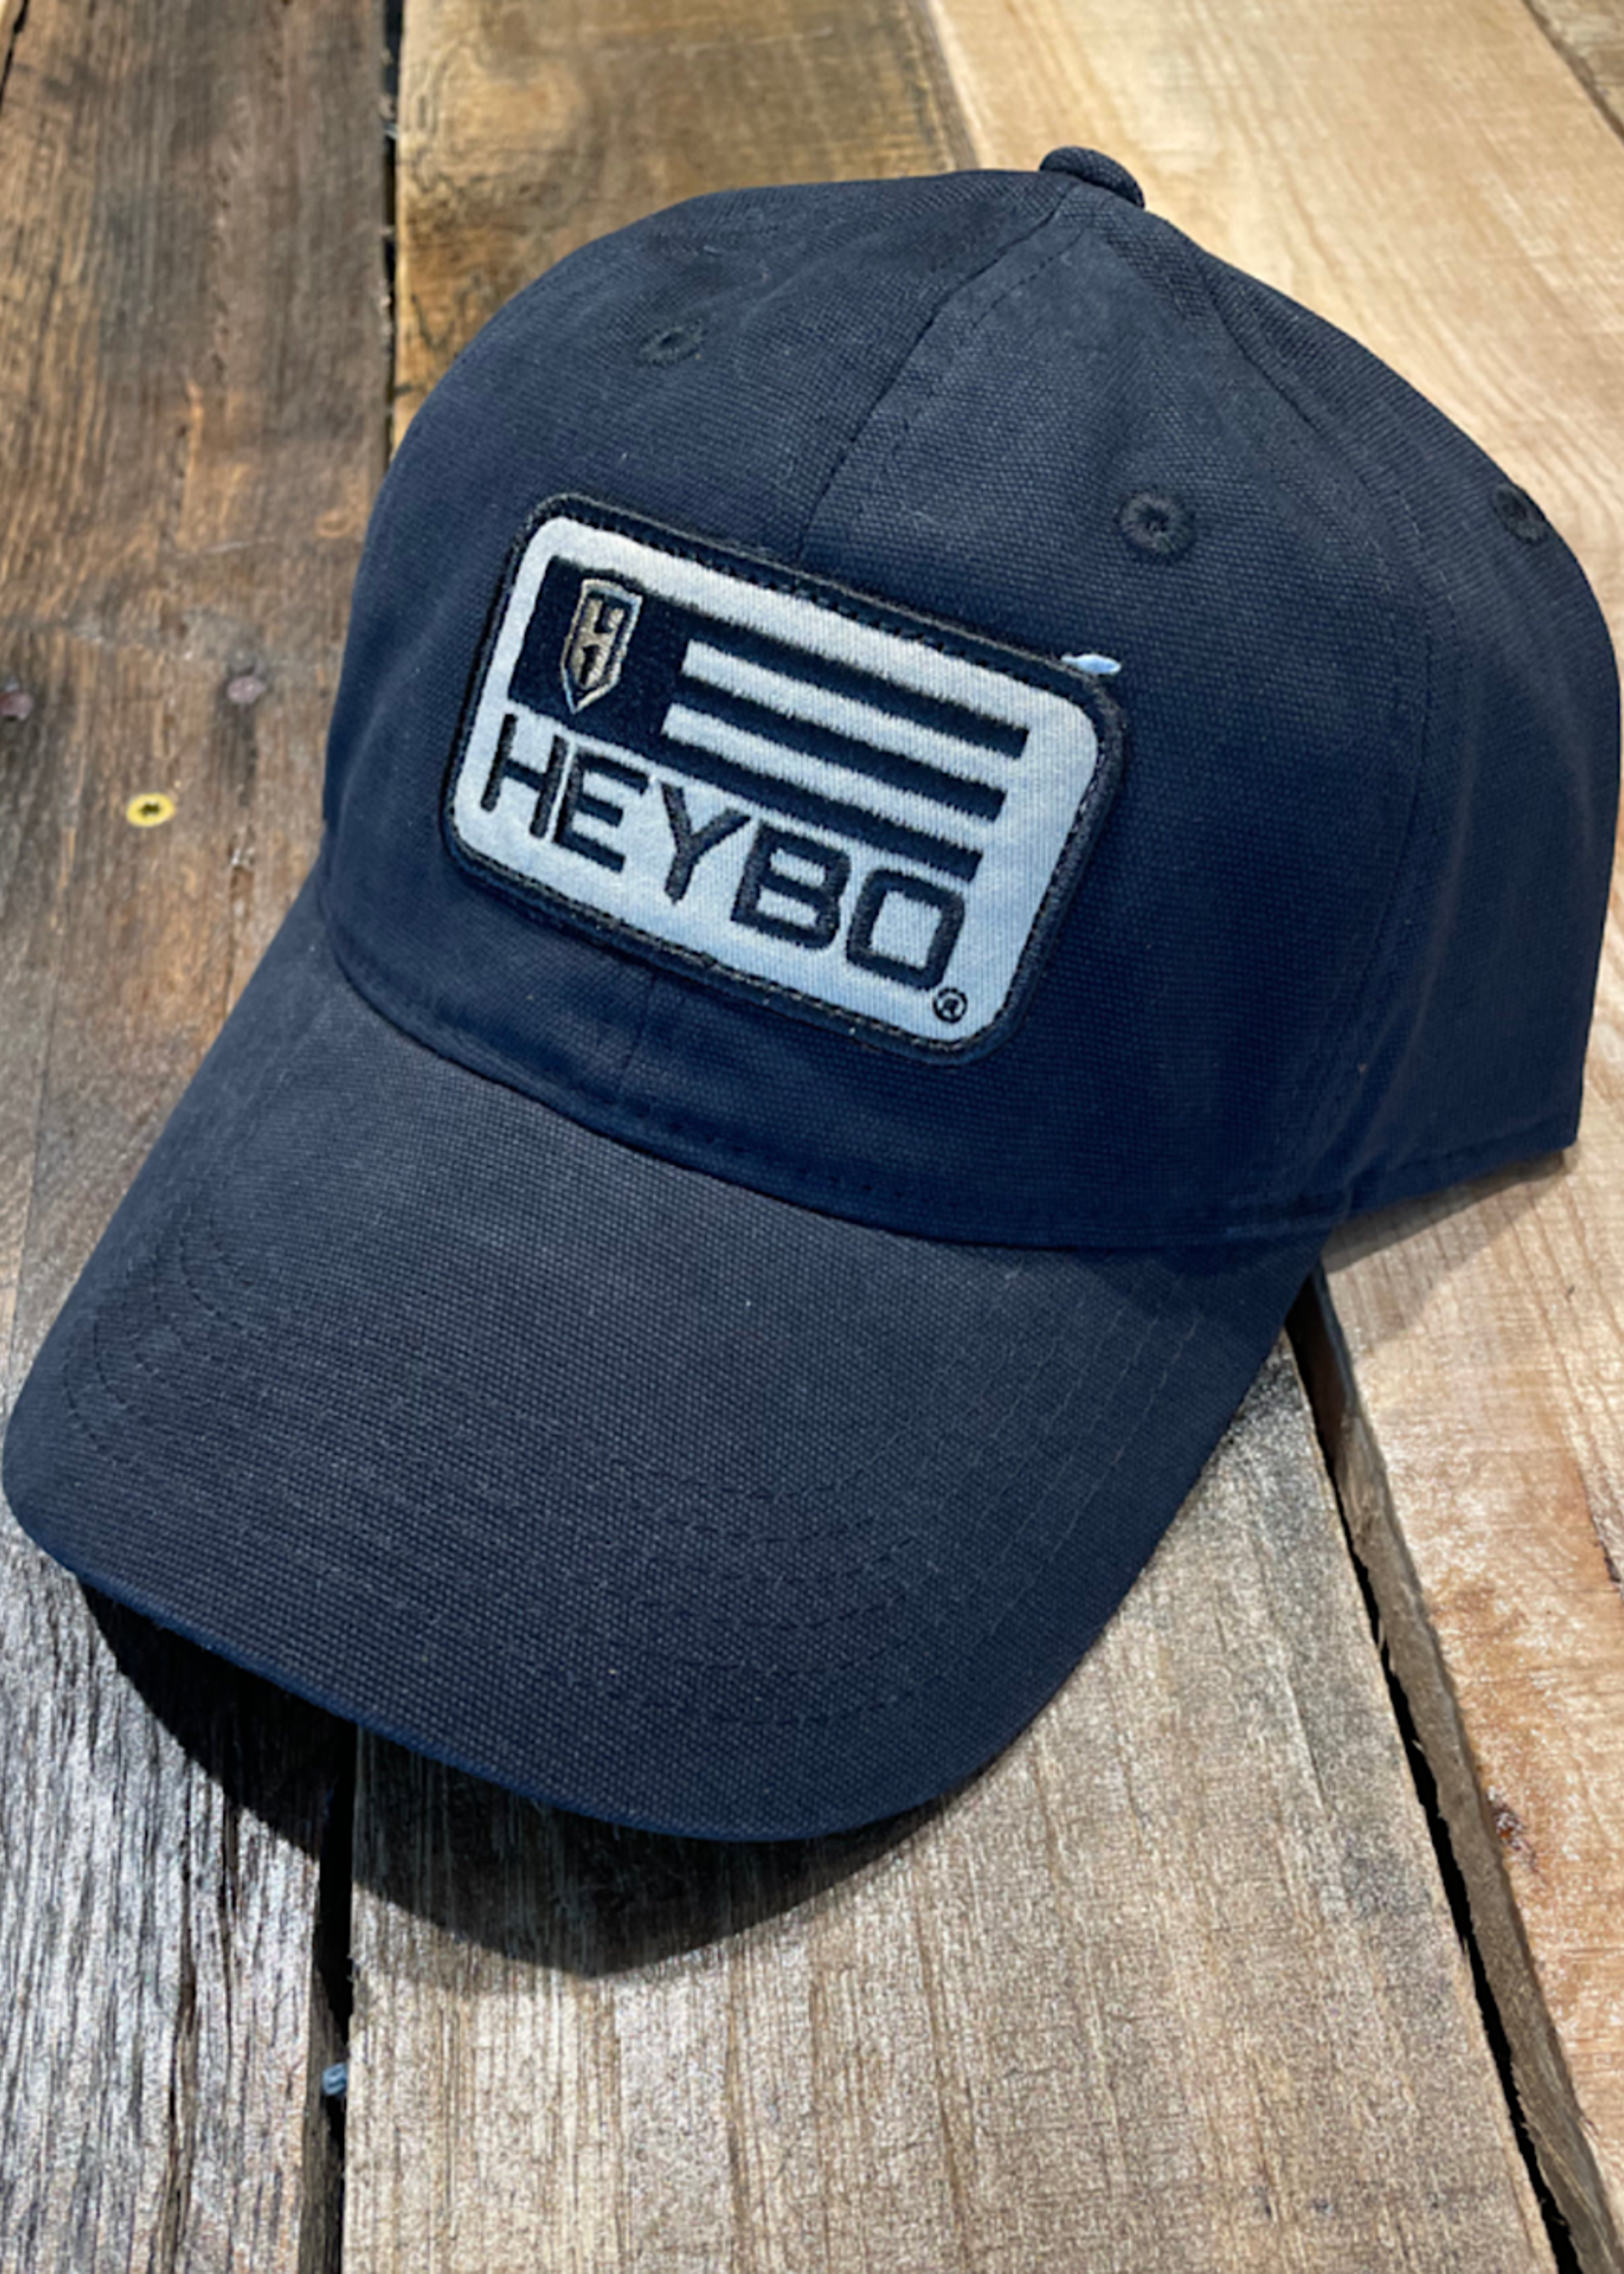 HEYBO Outdoors Heybo Men's Hats